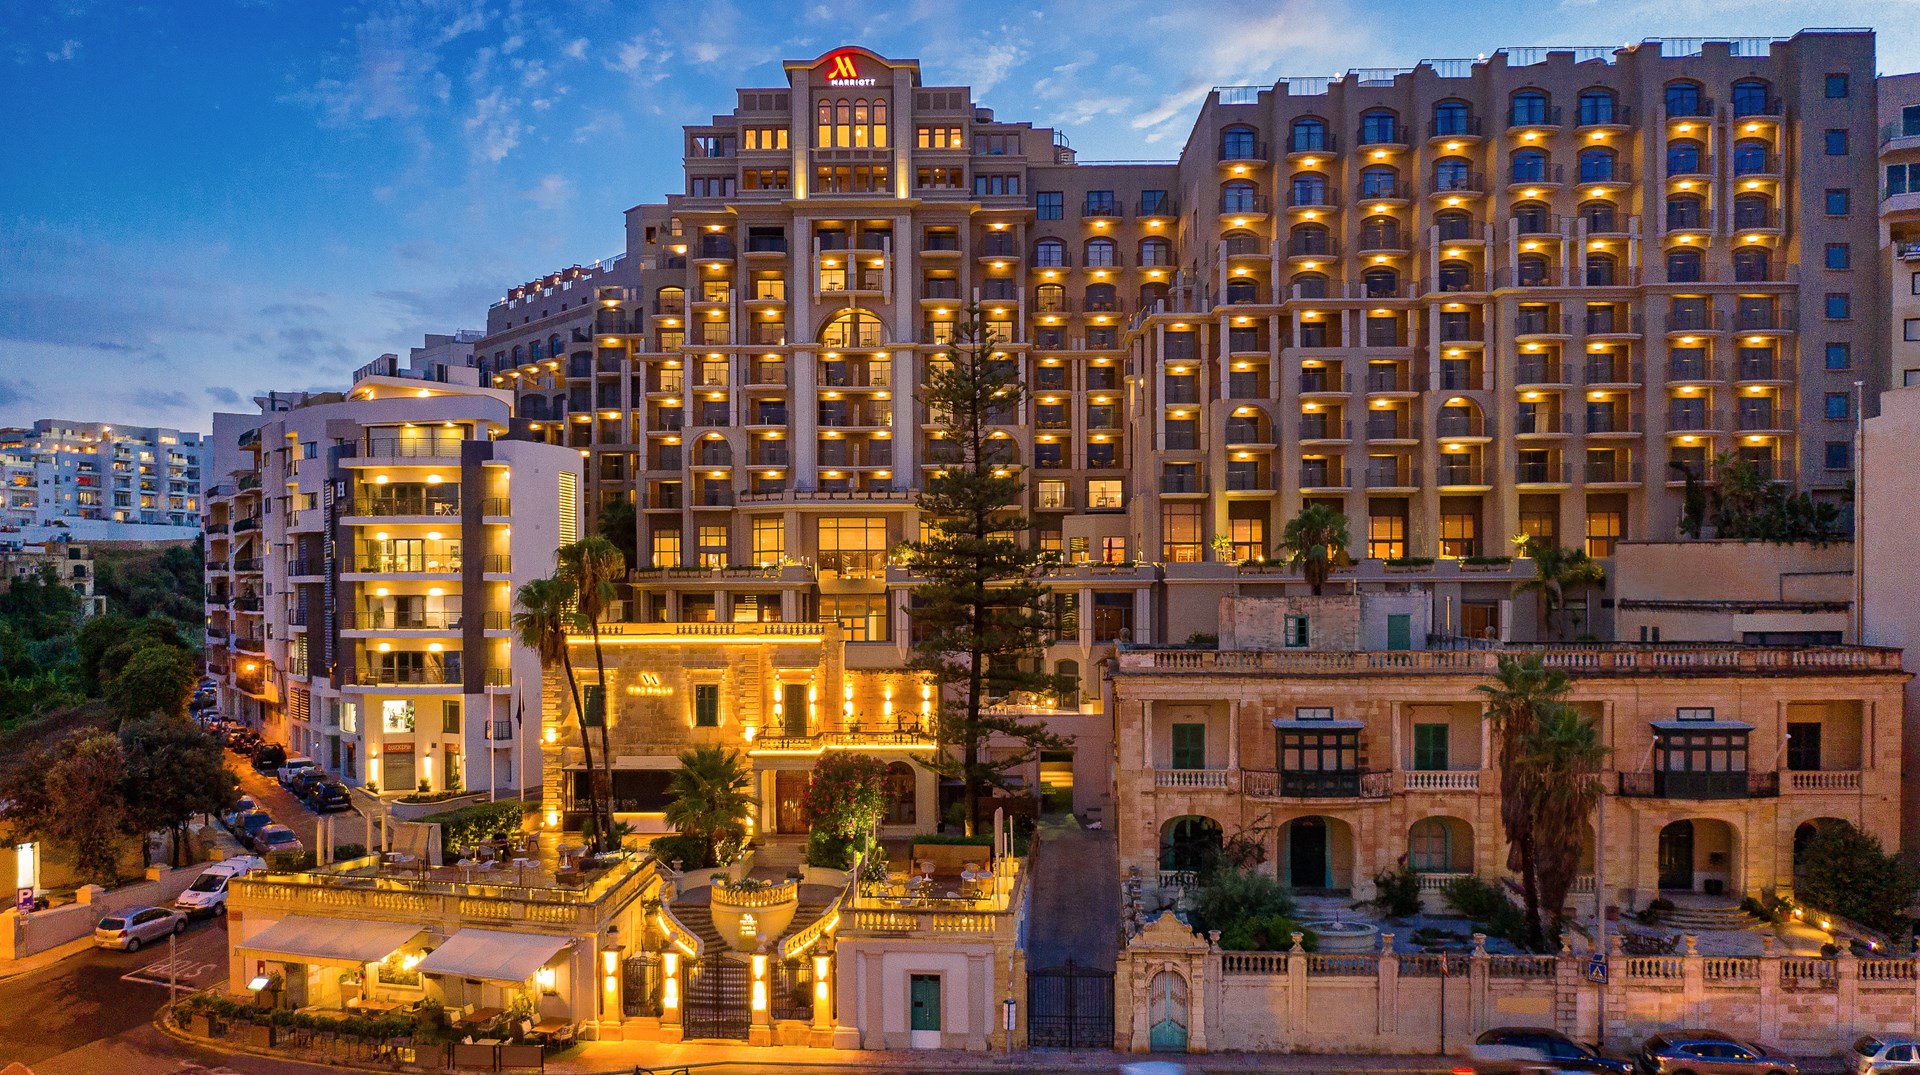 Schitterend 5-sterren resort aan de sfeervolle promenade van St. Julian's  Malta Marriott Hotel & Spa